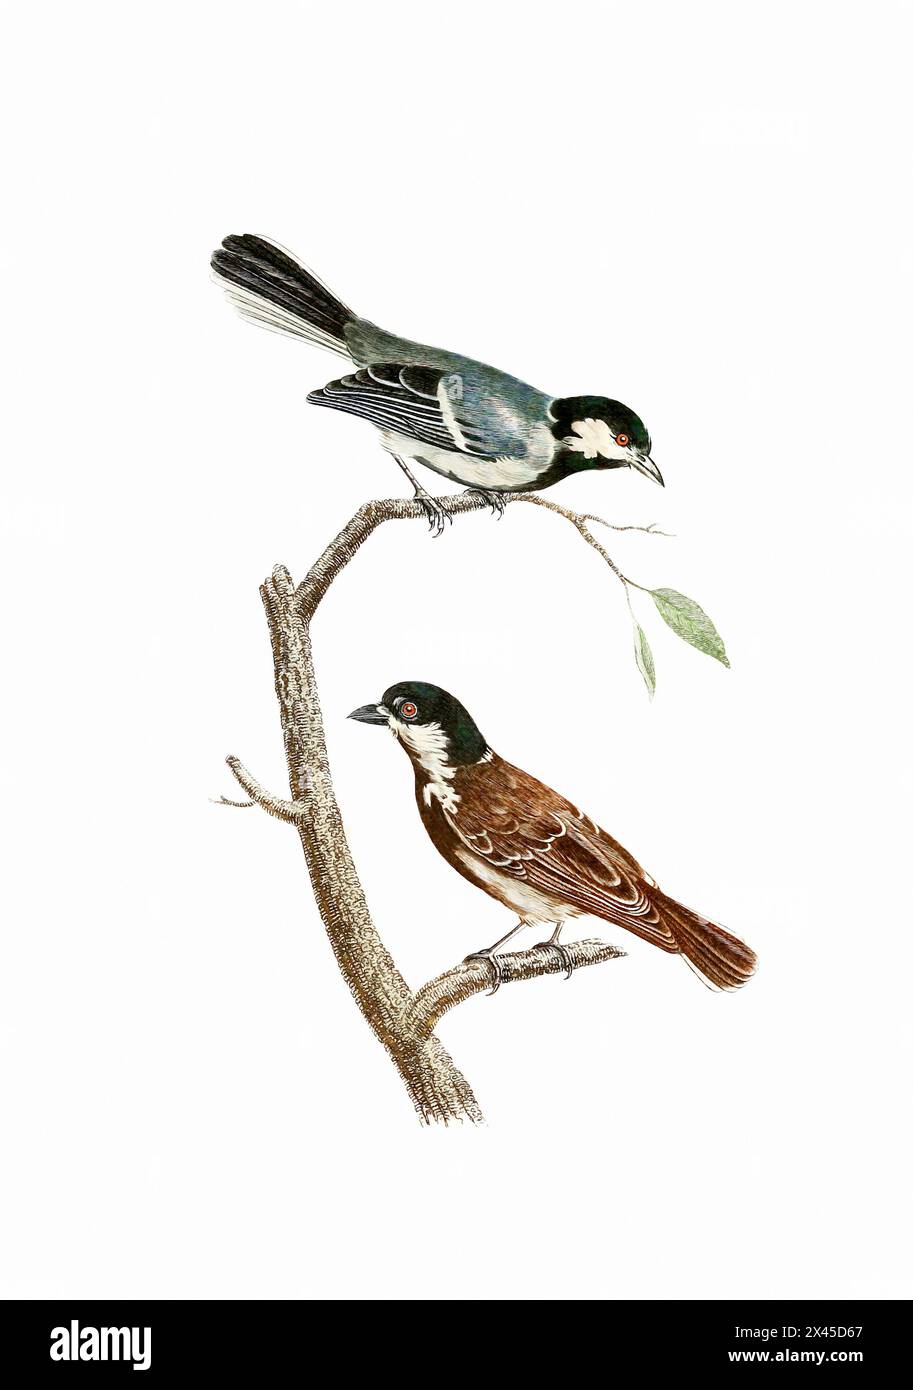 Singvögel. Vintage-inspirierte Vogelkunst. Digitale Aquarellmalerei auf weichem, strukturiertem weißem Hintergrund. Stockfoto